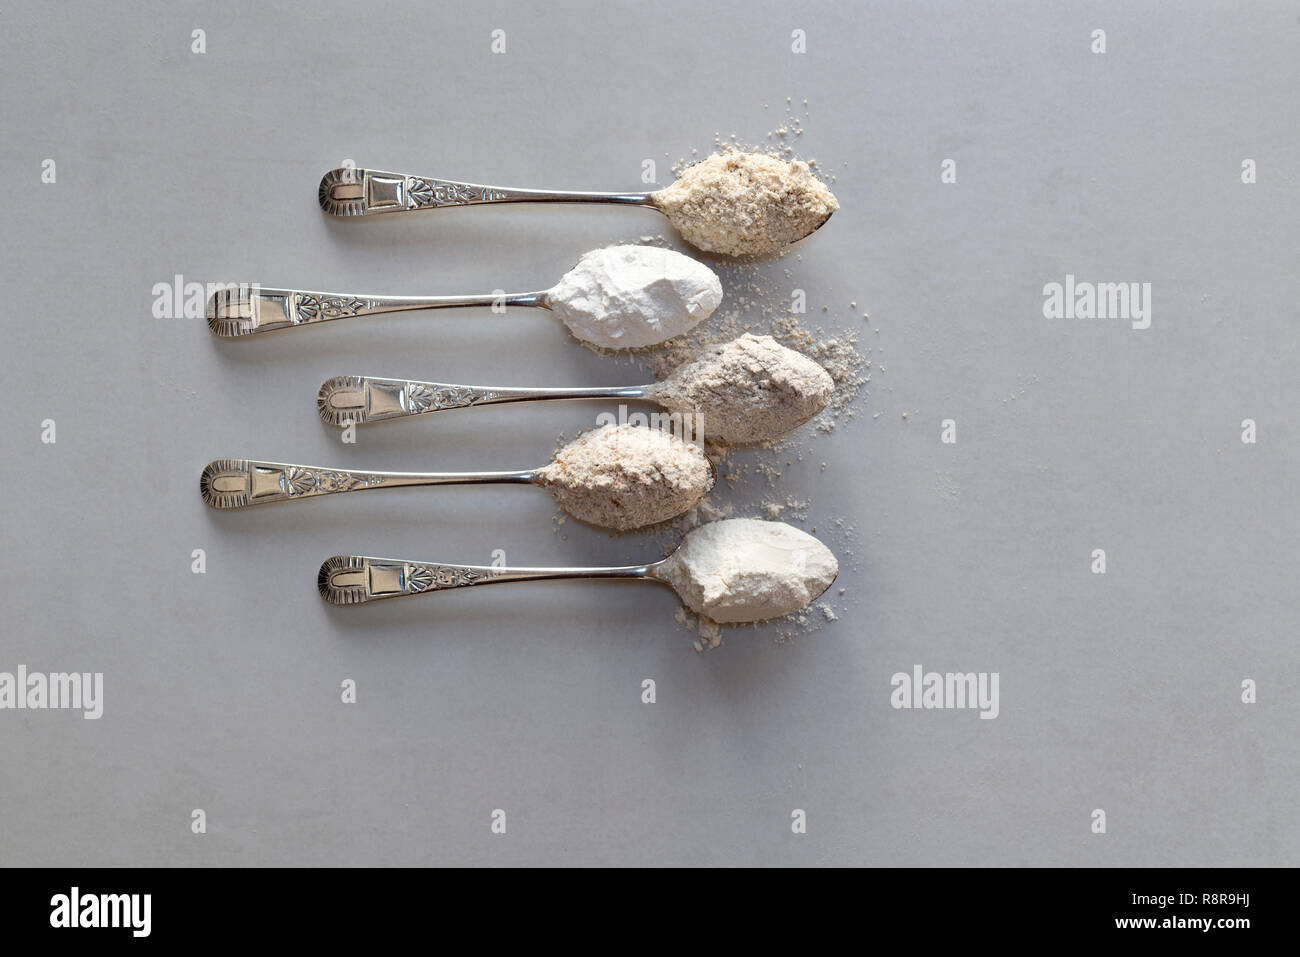 Fünf Esslöffel verschiedene Mehle. Von oben: Hafer, Reismehl, Roggenmehl, vollkornmehls, glattes Mehl. Stockfoto